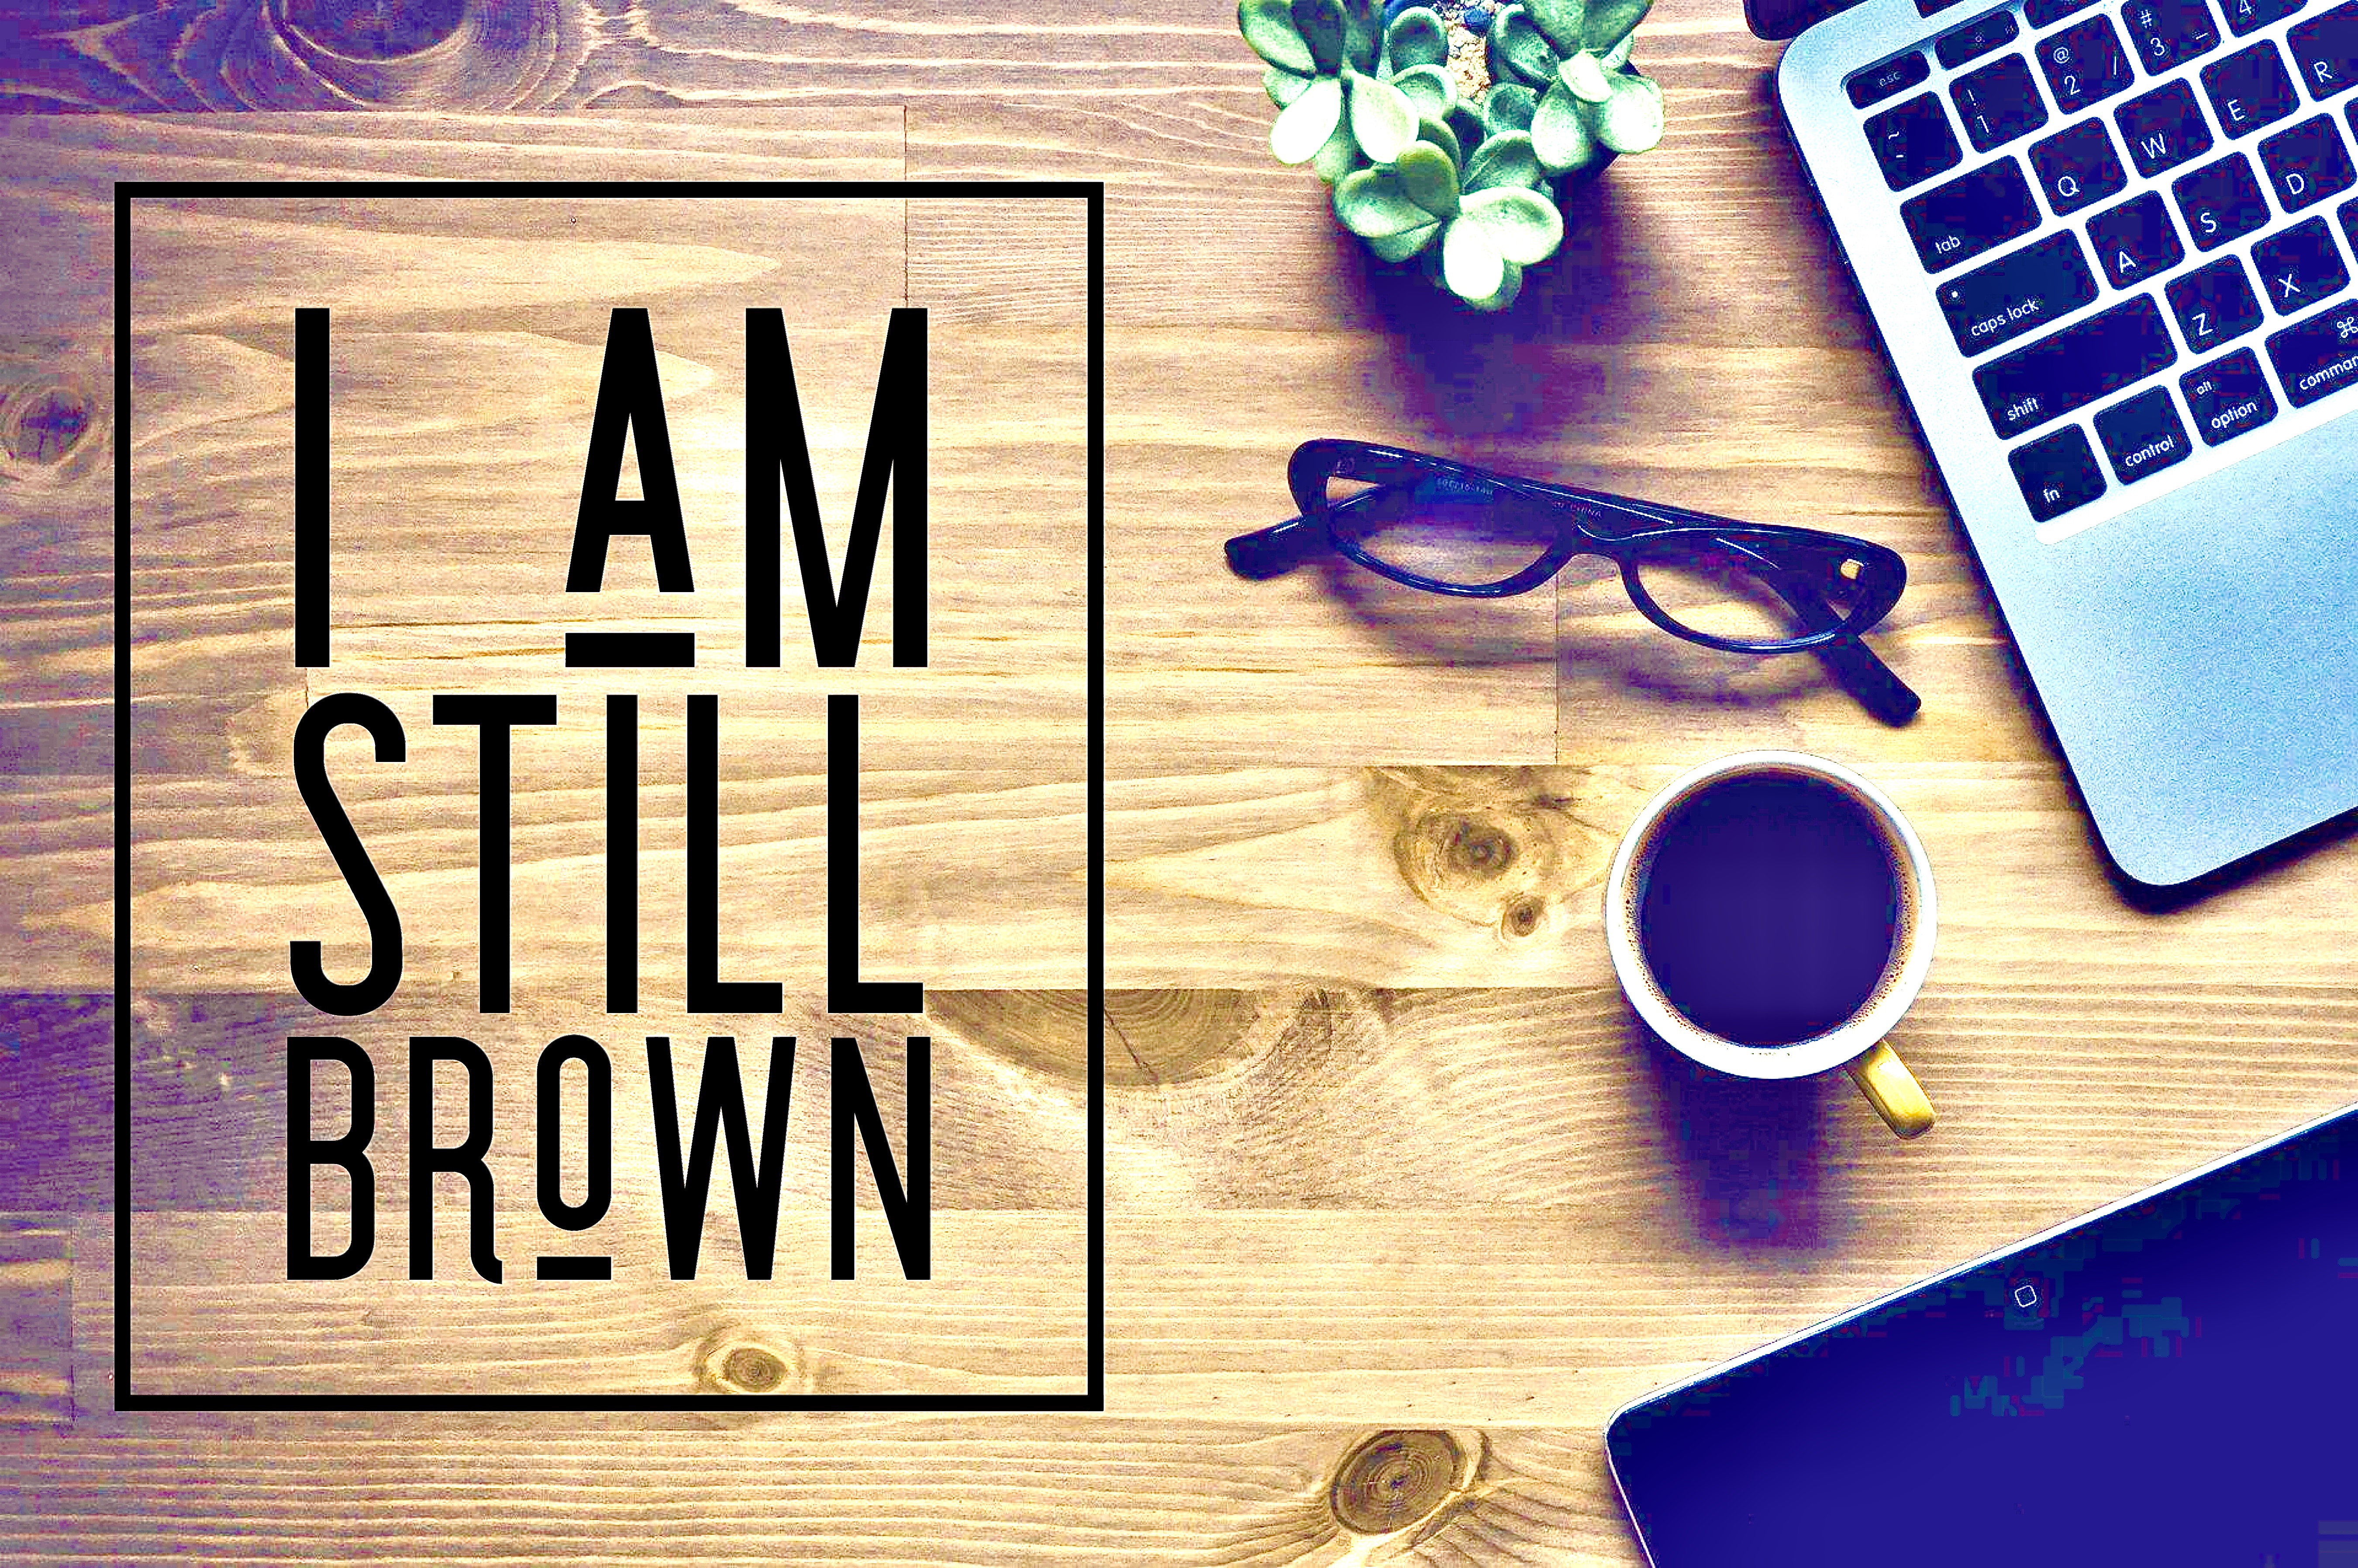 I’m still brown.